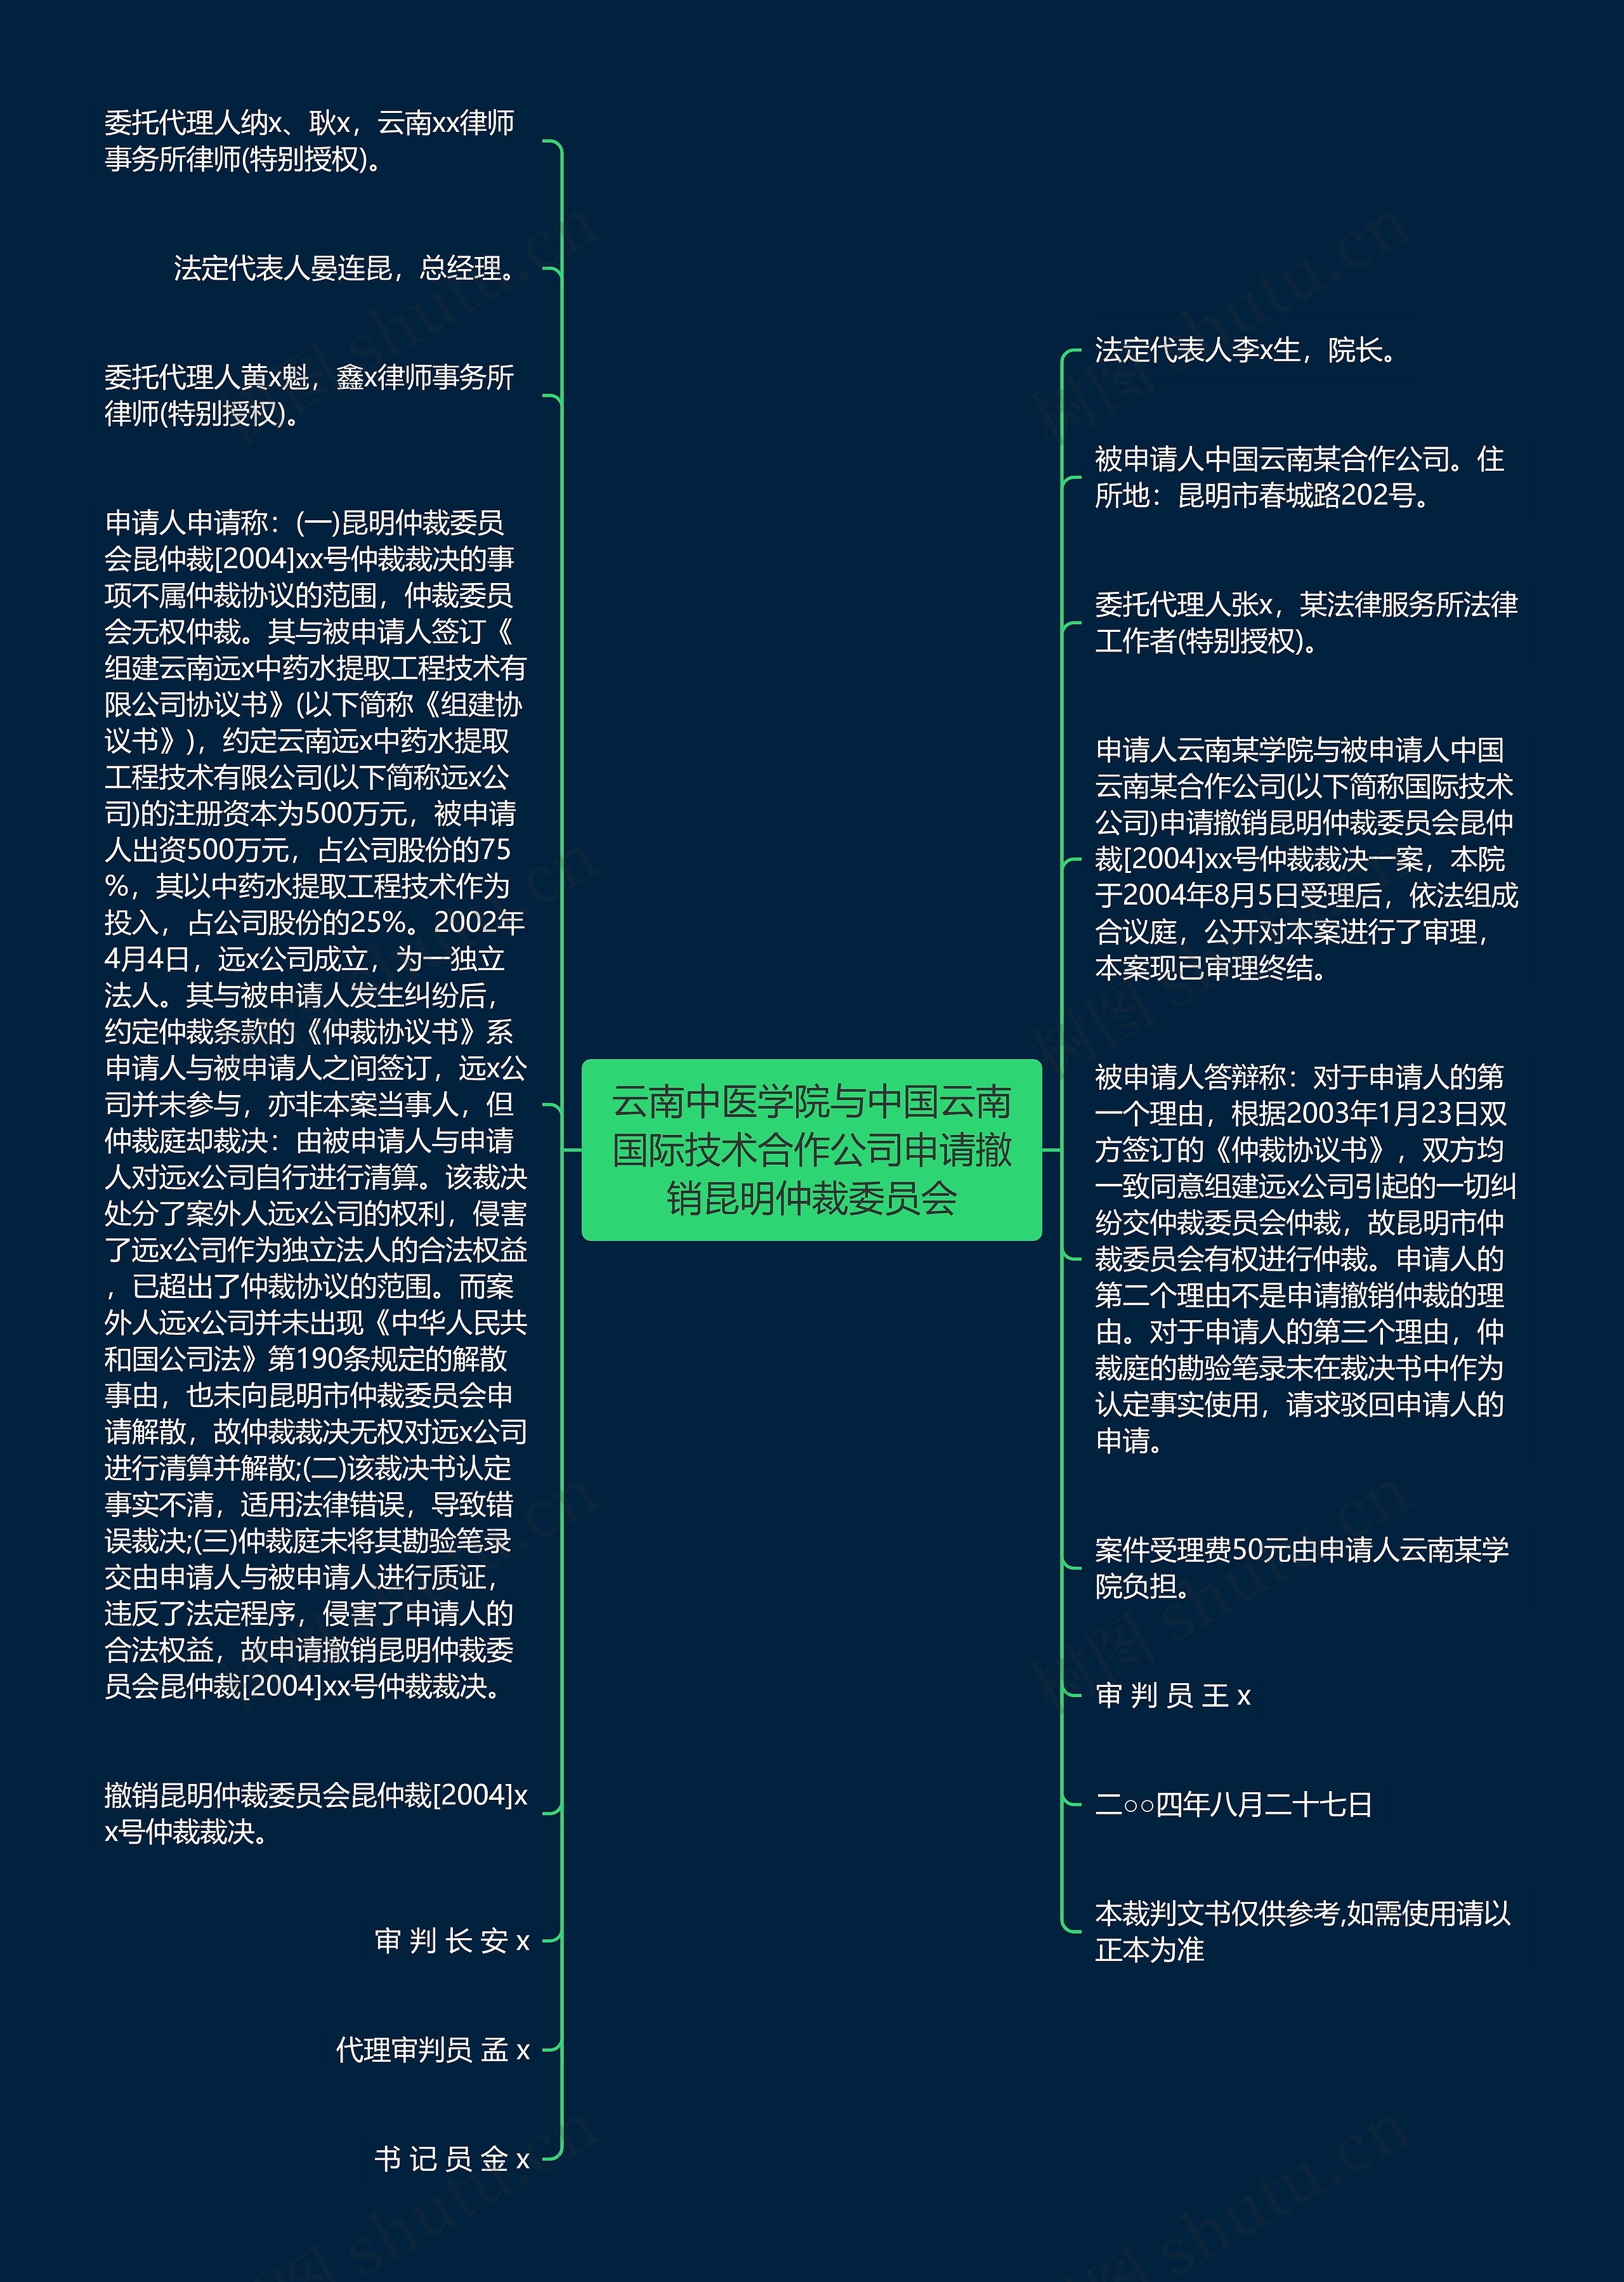 云南中医学院与中国云南国际技术合作公司申请撤销昆明仲裁委员会